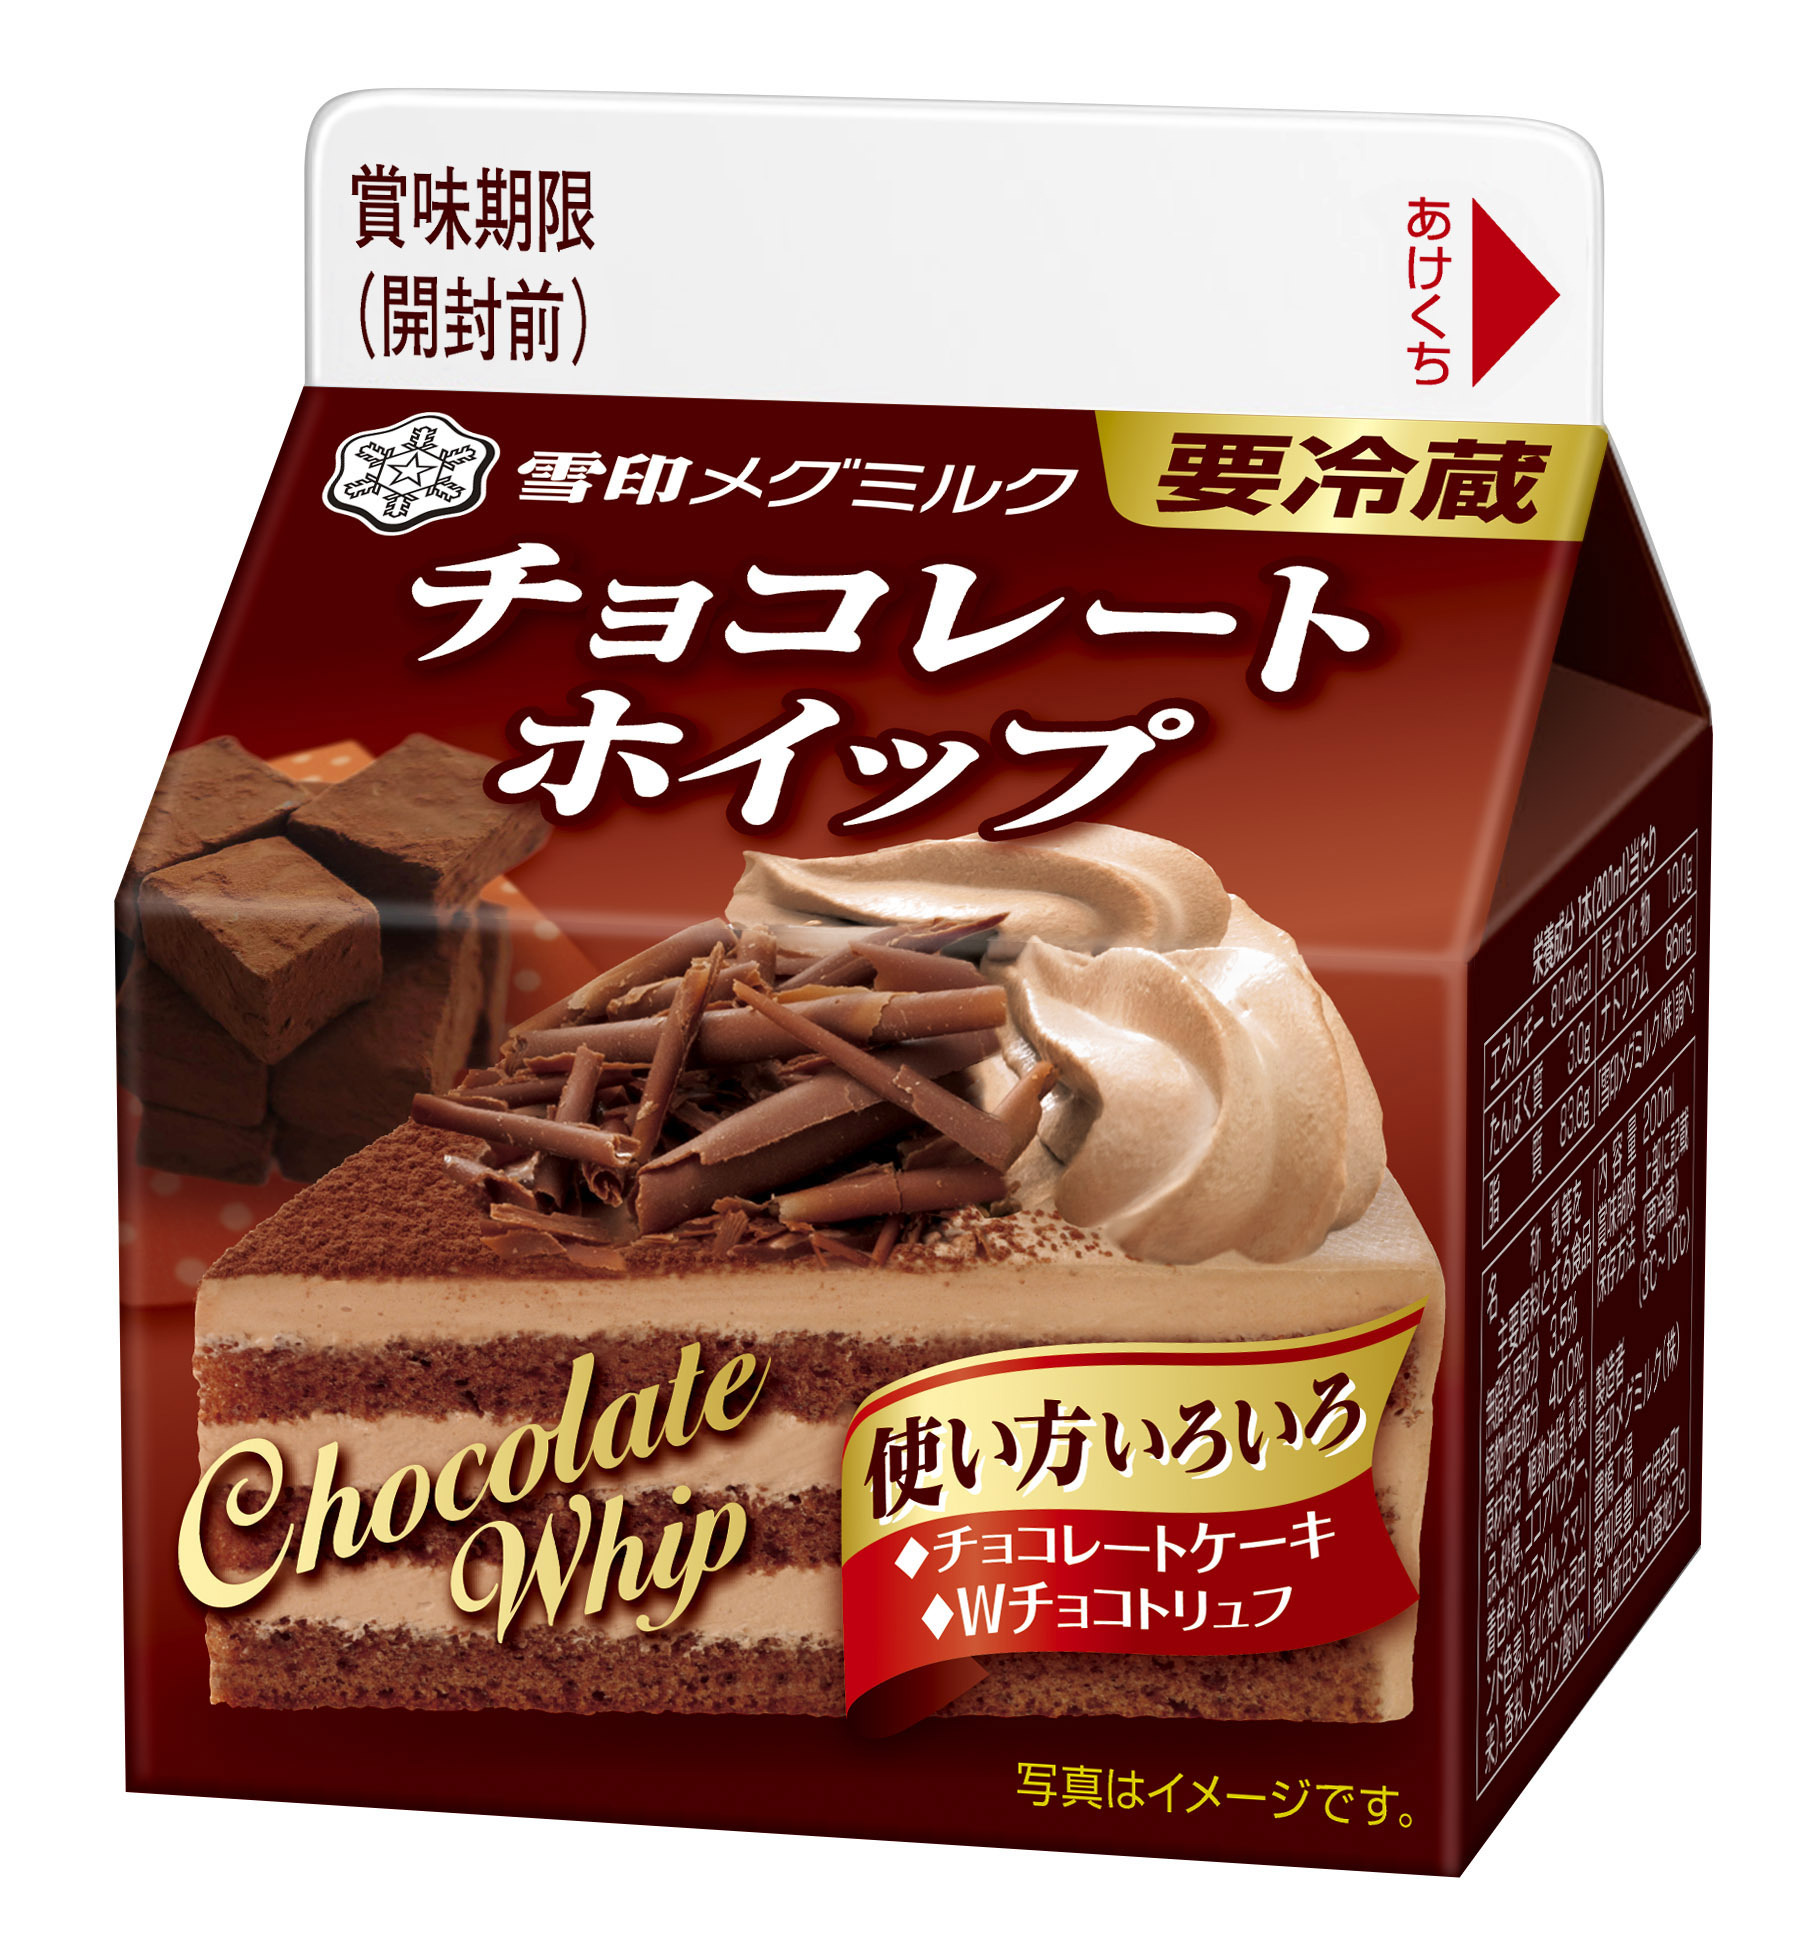 雪印メグミルク チョコレートホイップ Ll0ml18年11月6日 火 より全国で期間限定発売 雪印メグミルク株式会社のプレスリリース